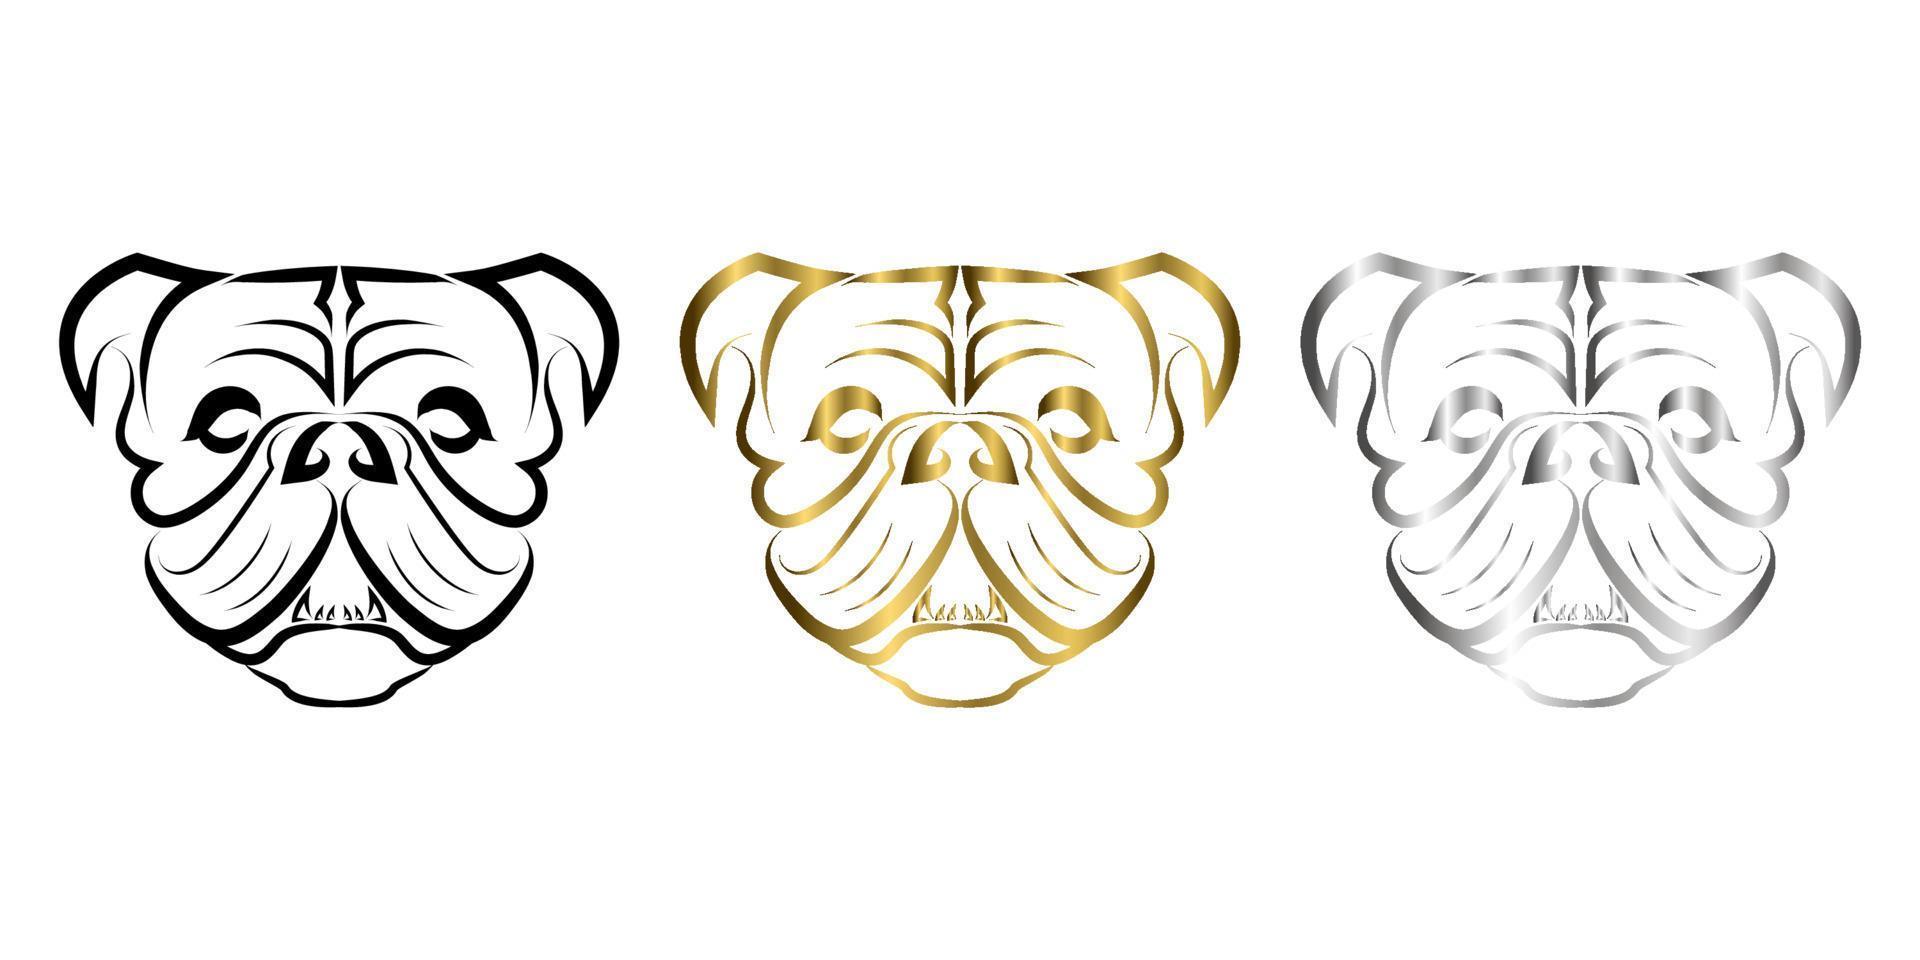 arte de linha de cabeça de cachorro bulldog ou pug. bom uso de símbolo, mascote, ícone, avatar, tatuagem, design de camiseta, logotipo ou qualquer design que você quiser. vetor